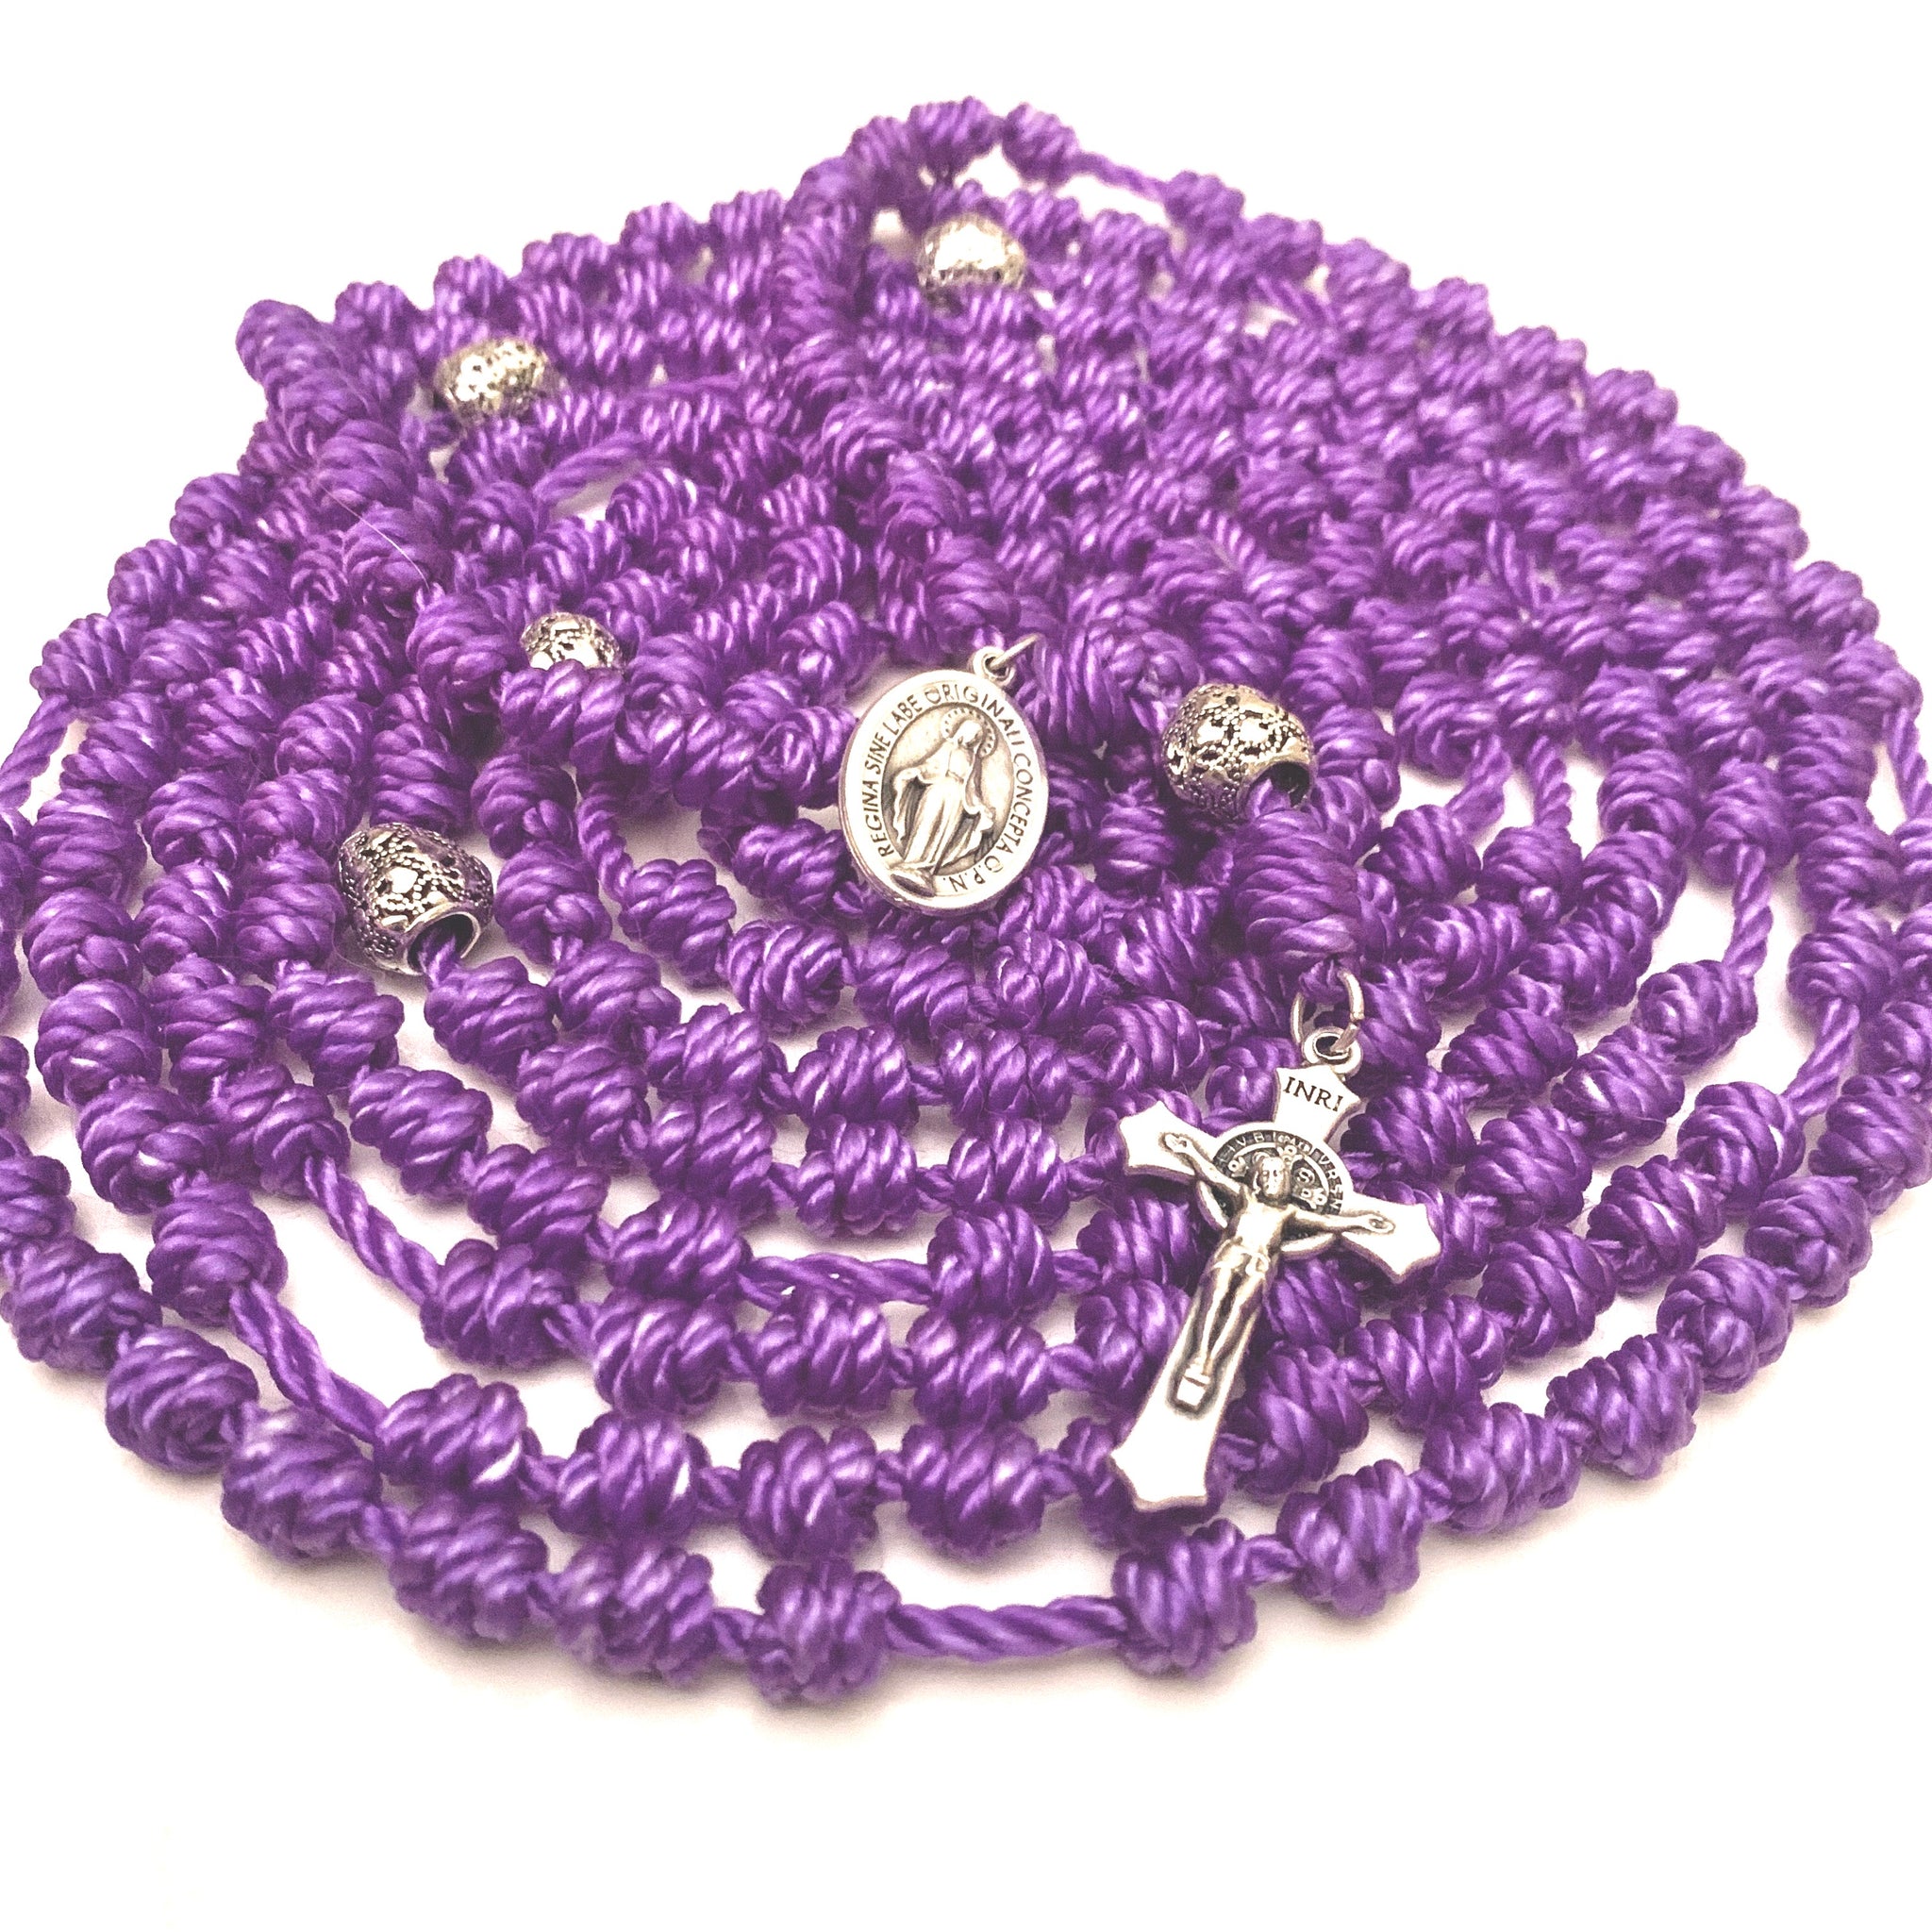 journey deeper thursday rosary